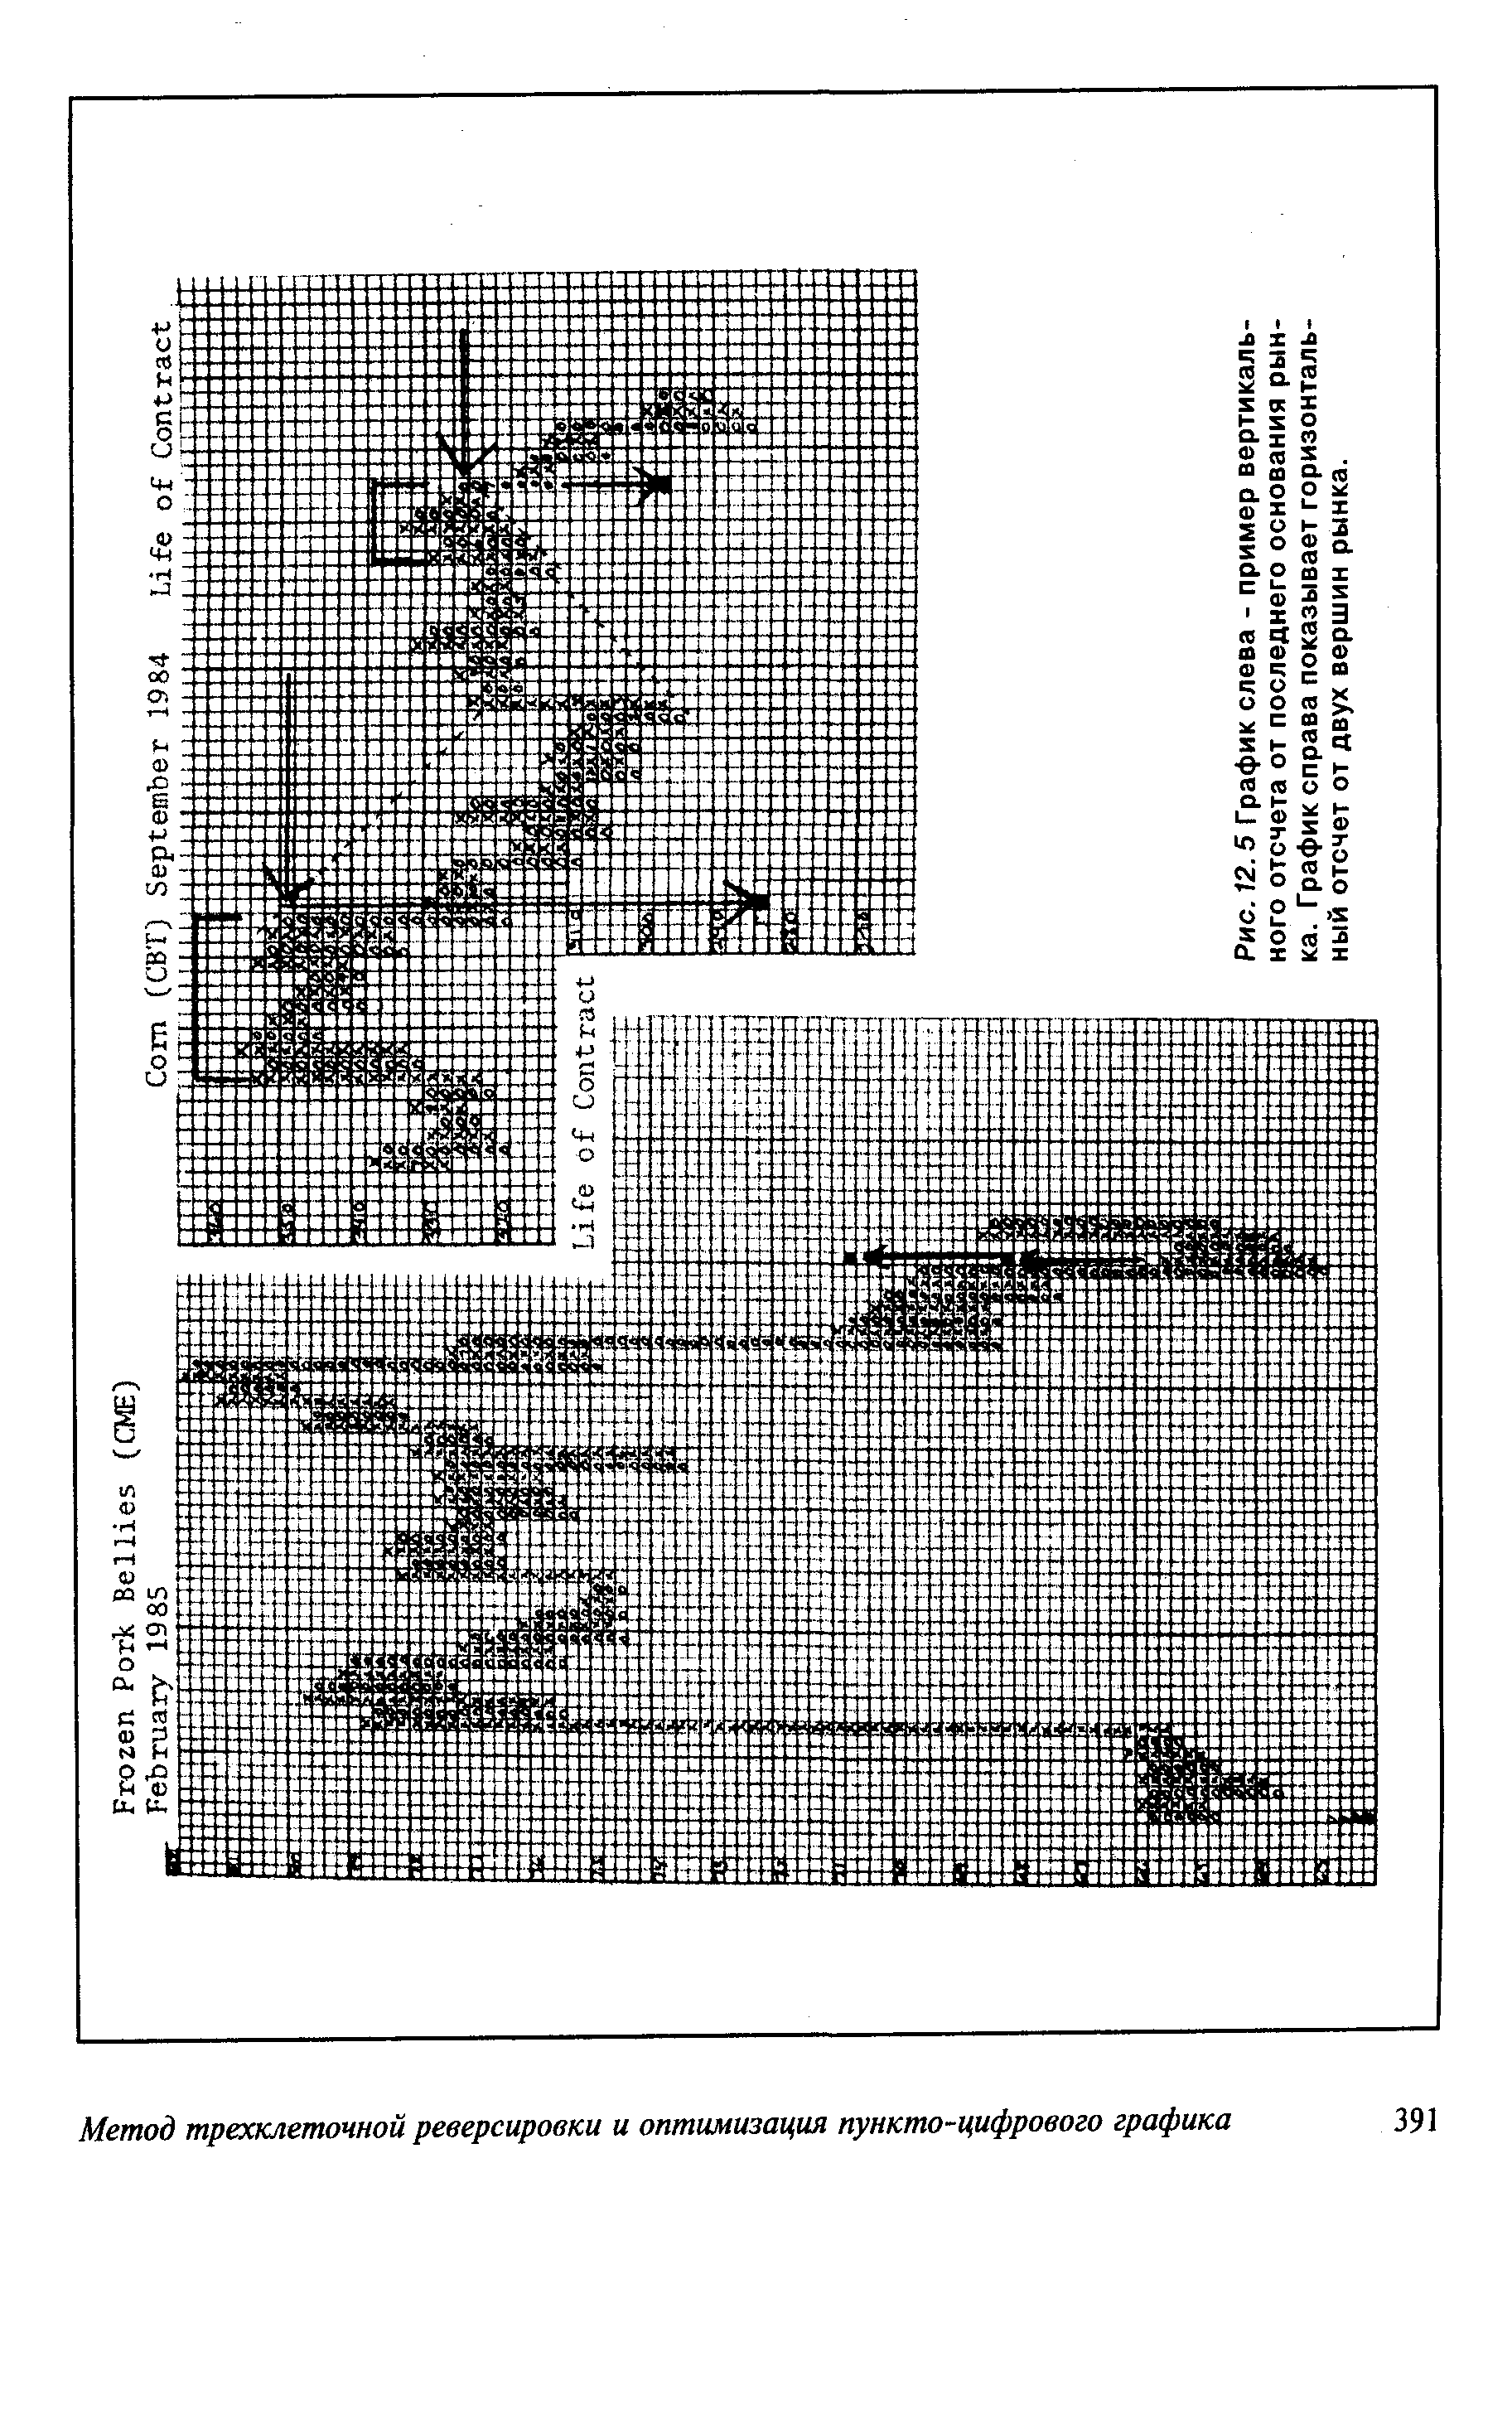 Рис. 12.5 График слева - пример вертикального отсчета от последнего основания рынка. График справа показывает горизонтальный отсчет от двух вершин рынка.
